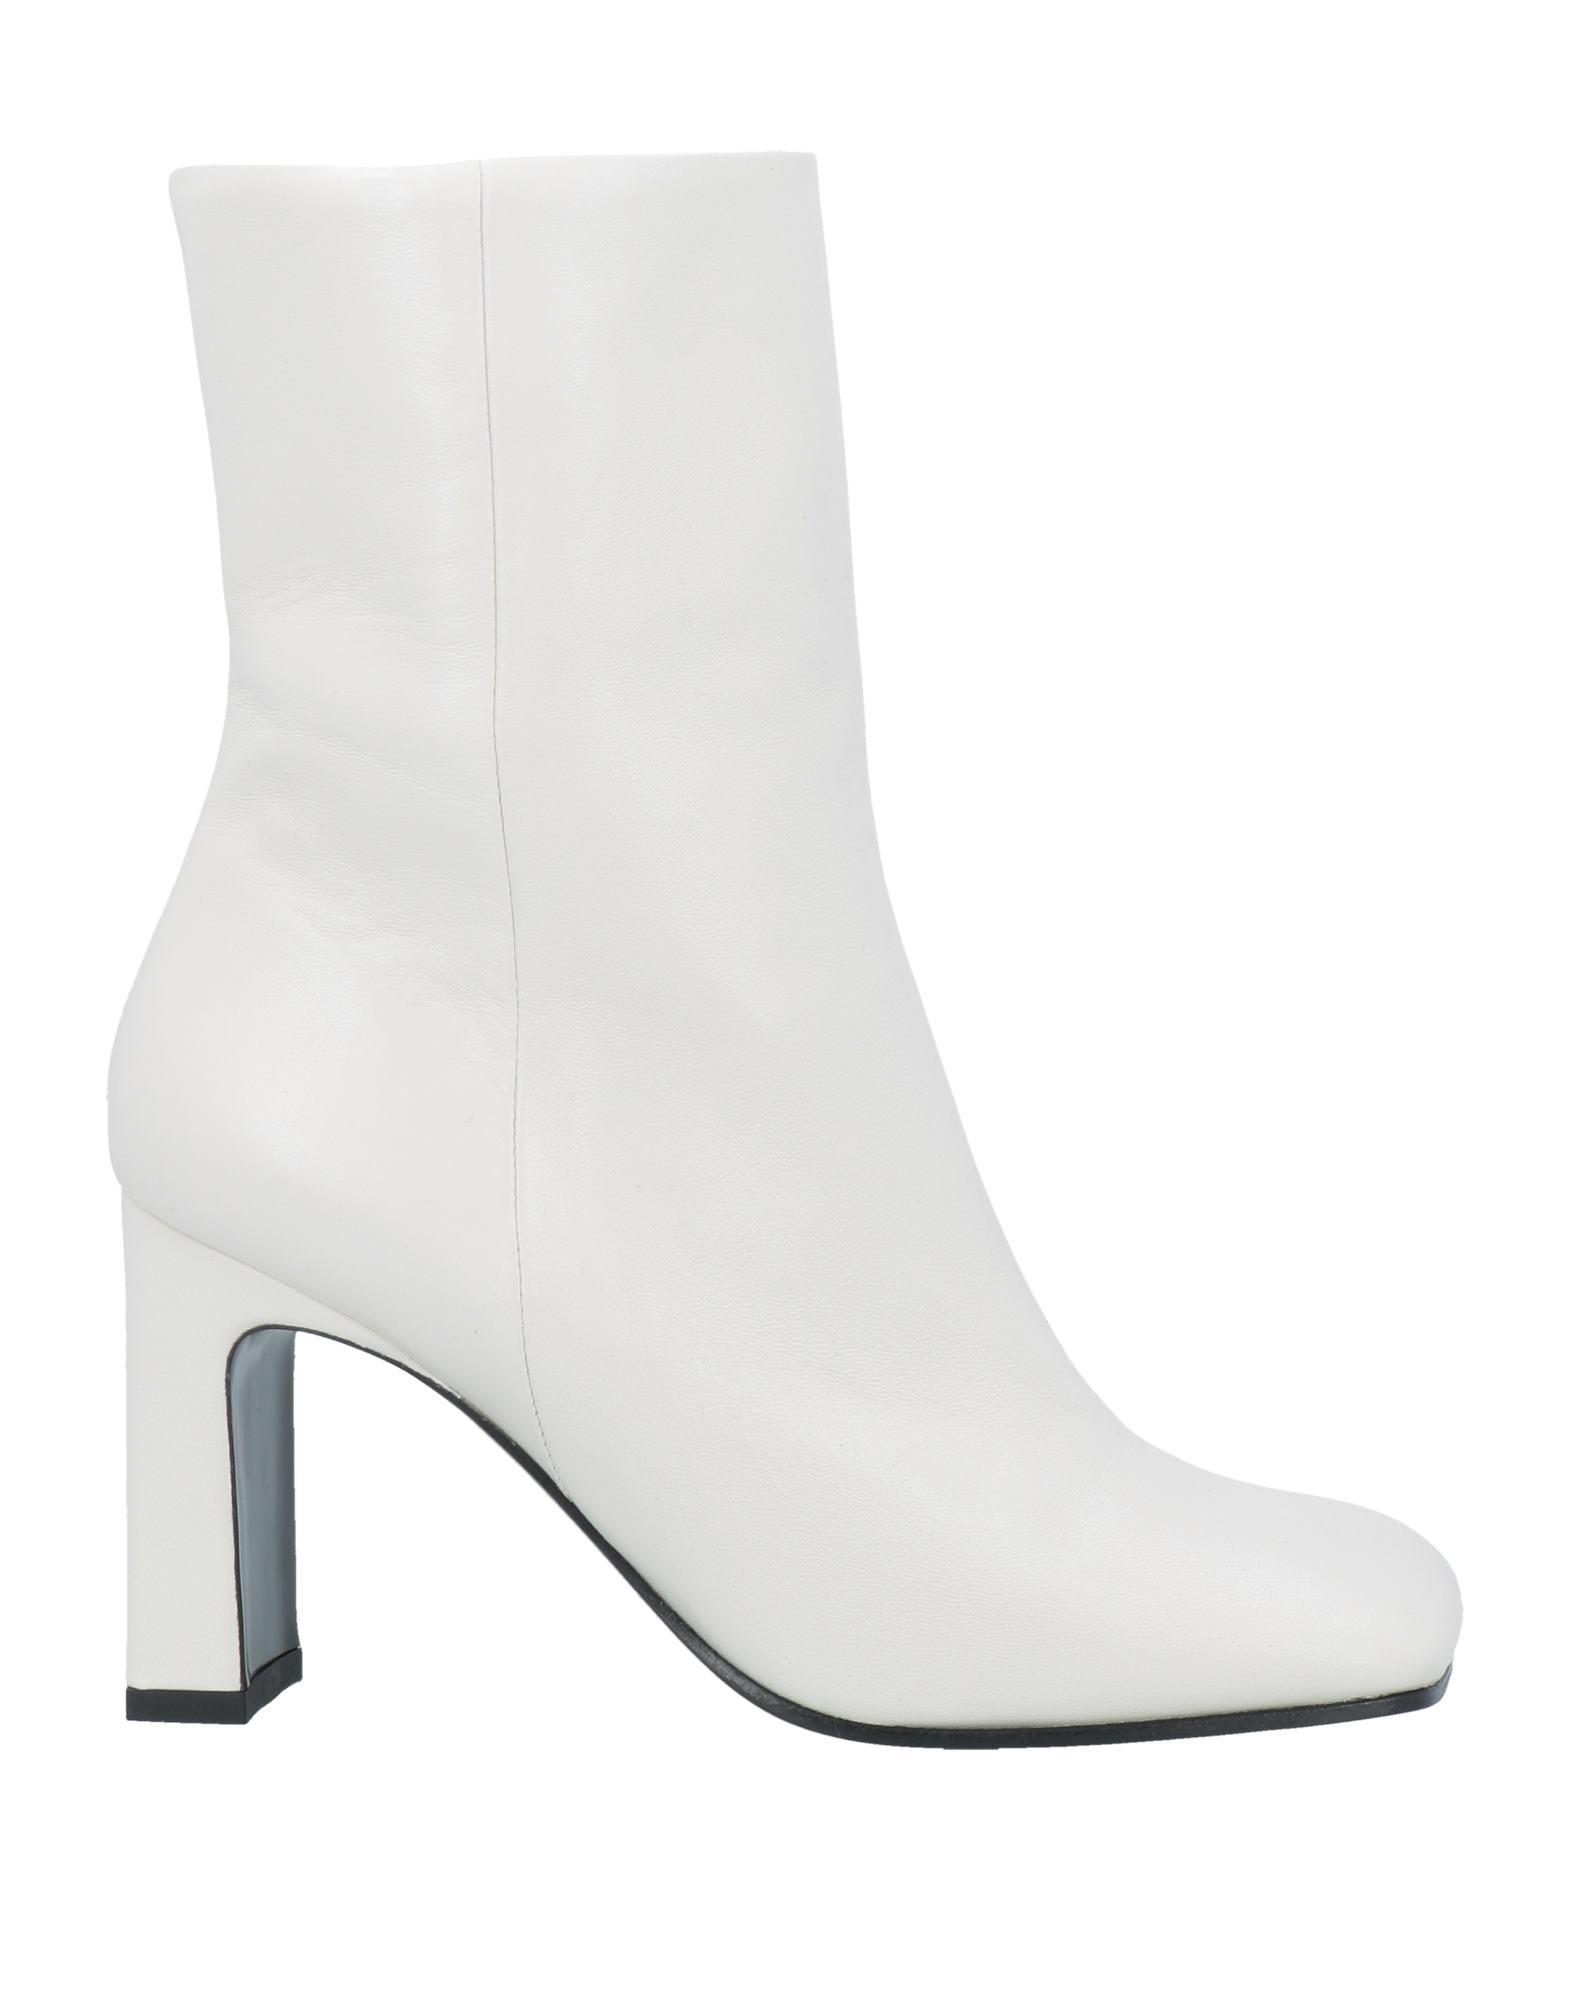 Aldo Castagna Ankle Boots In White